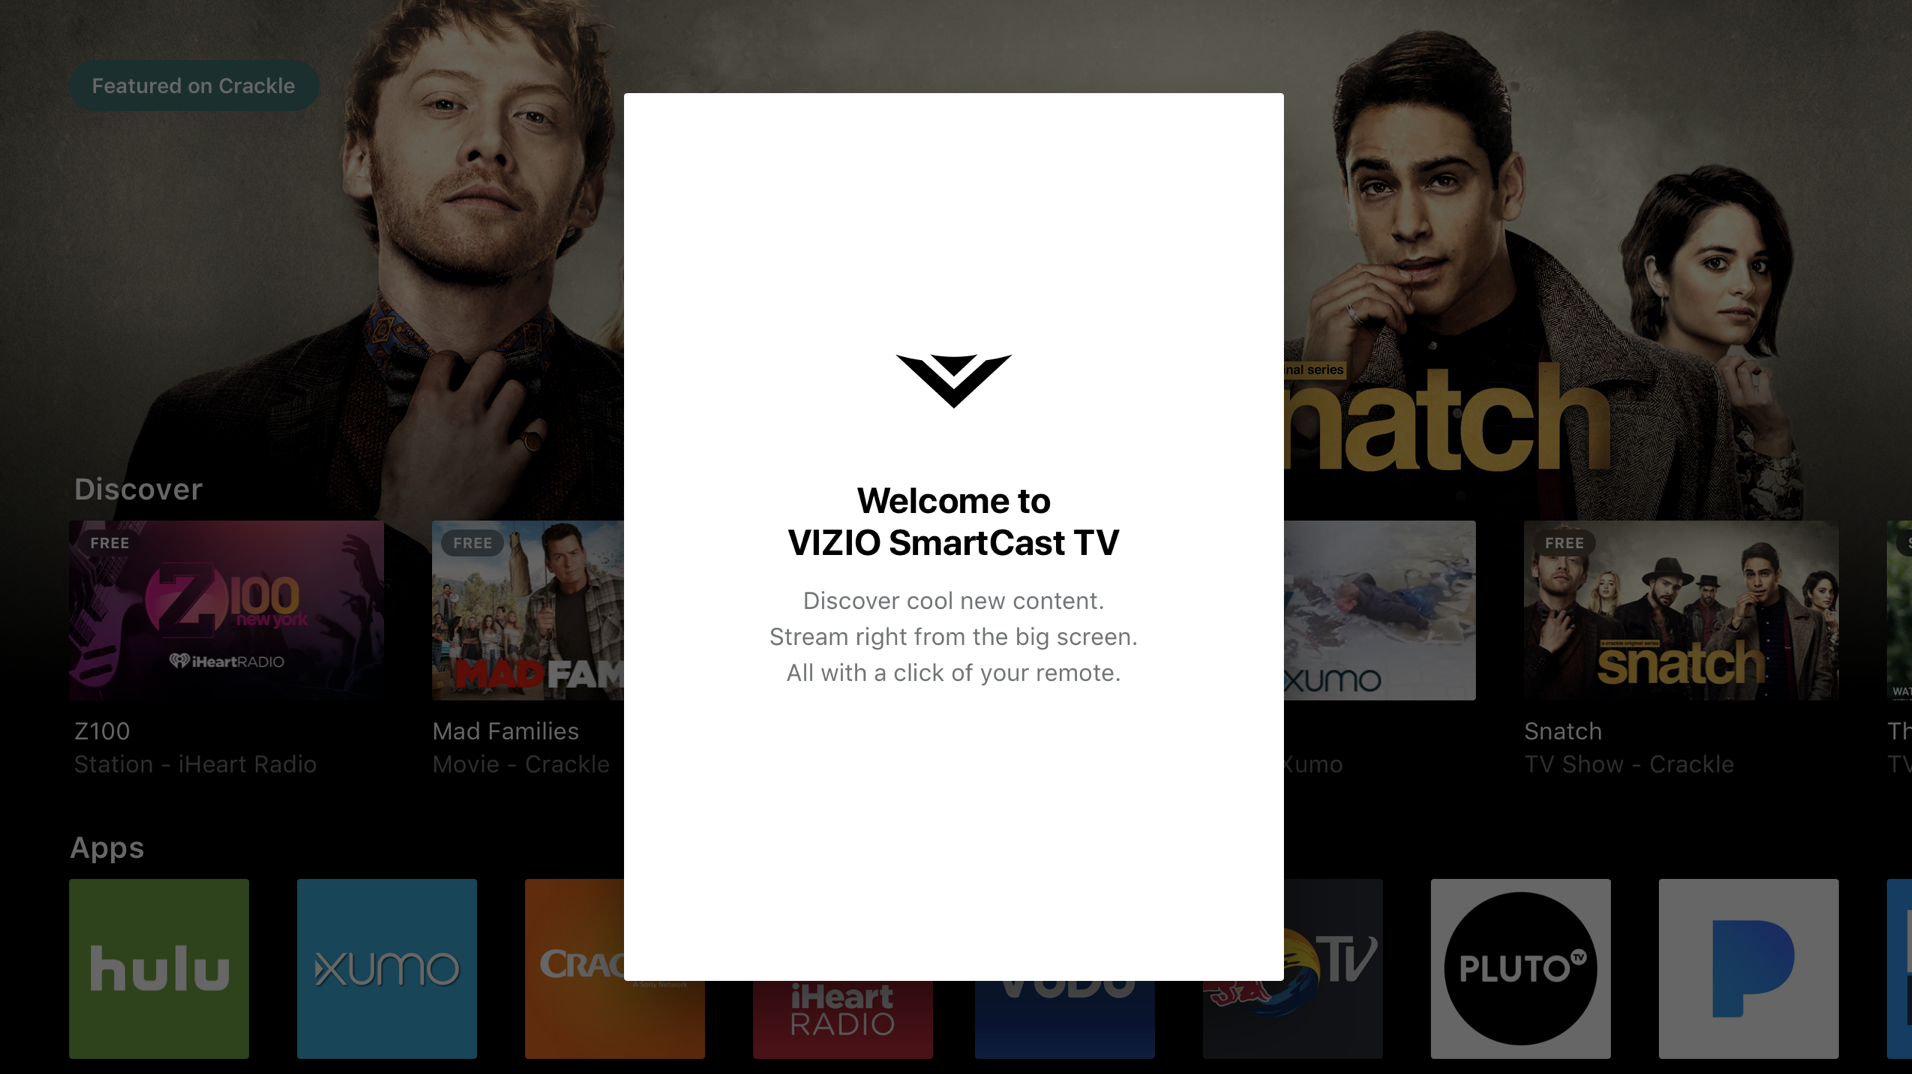 welcome to vizio smartcast tv